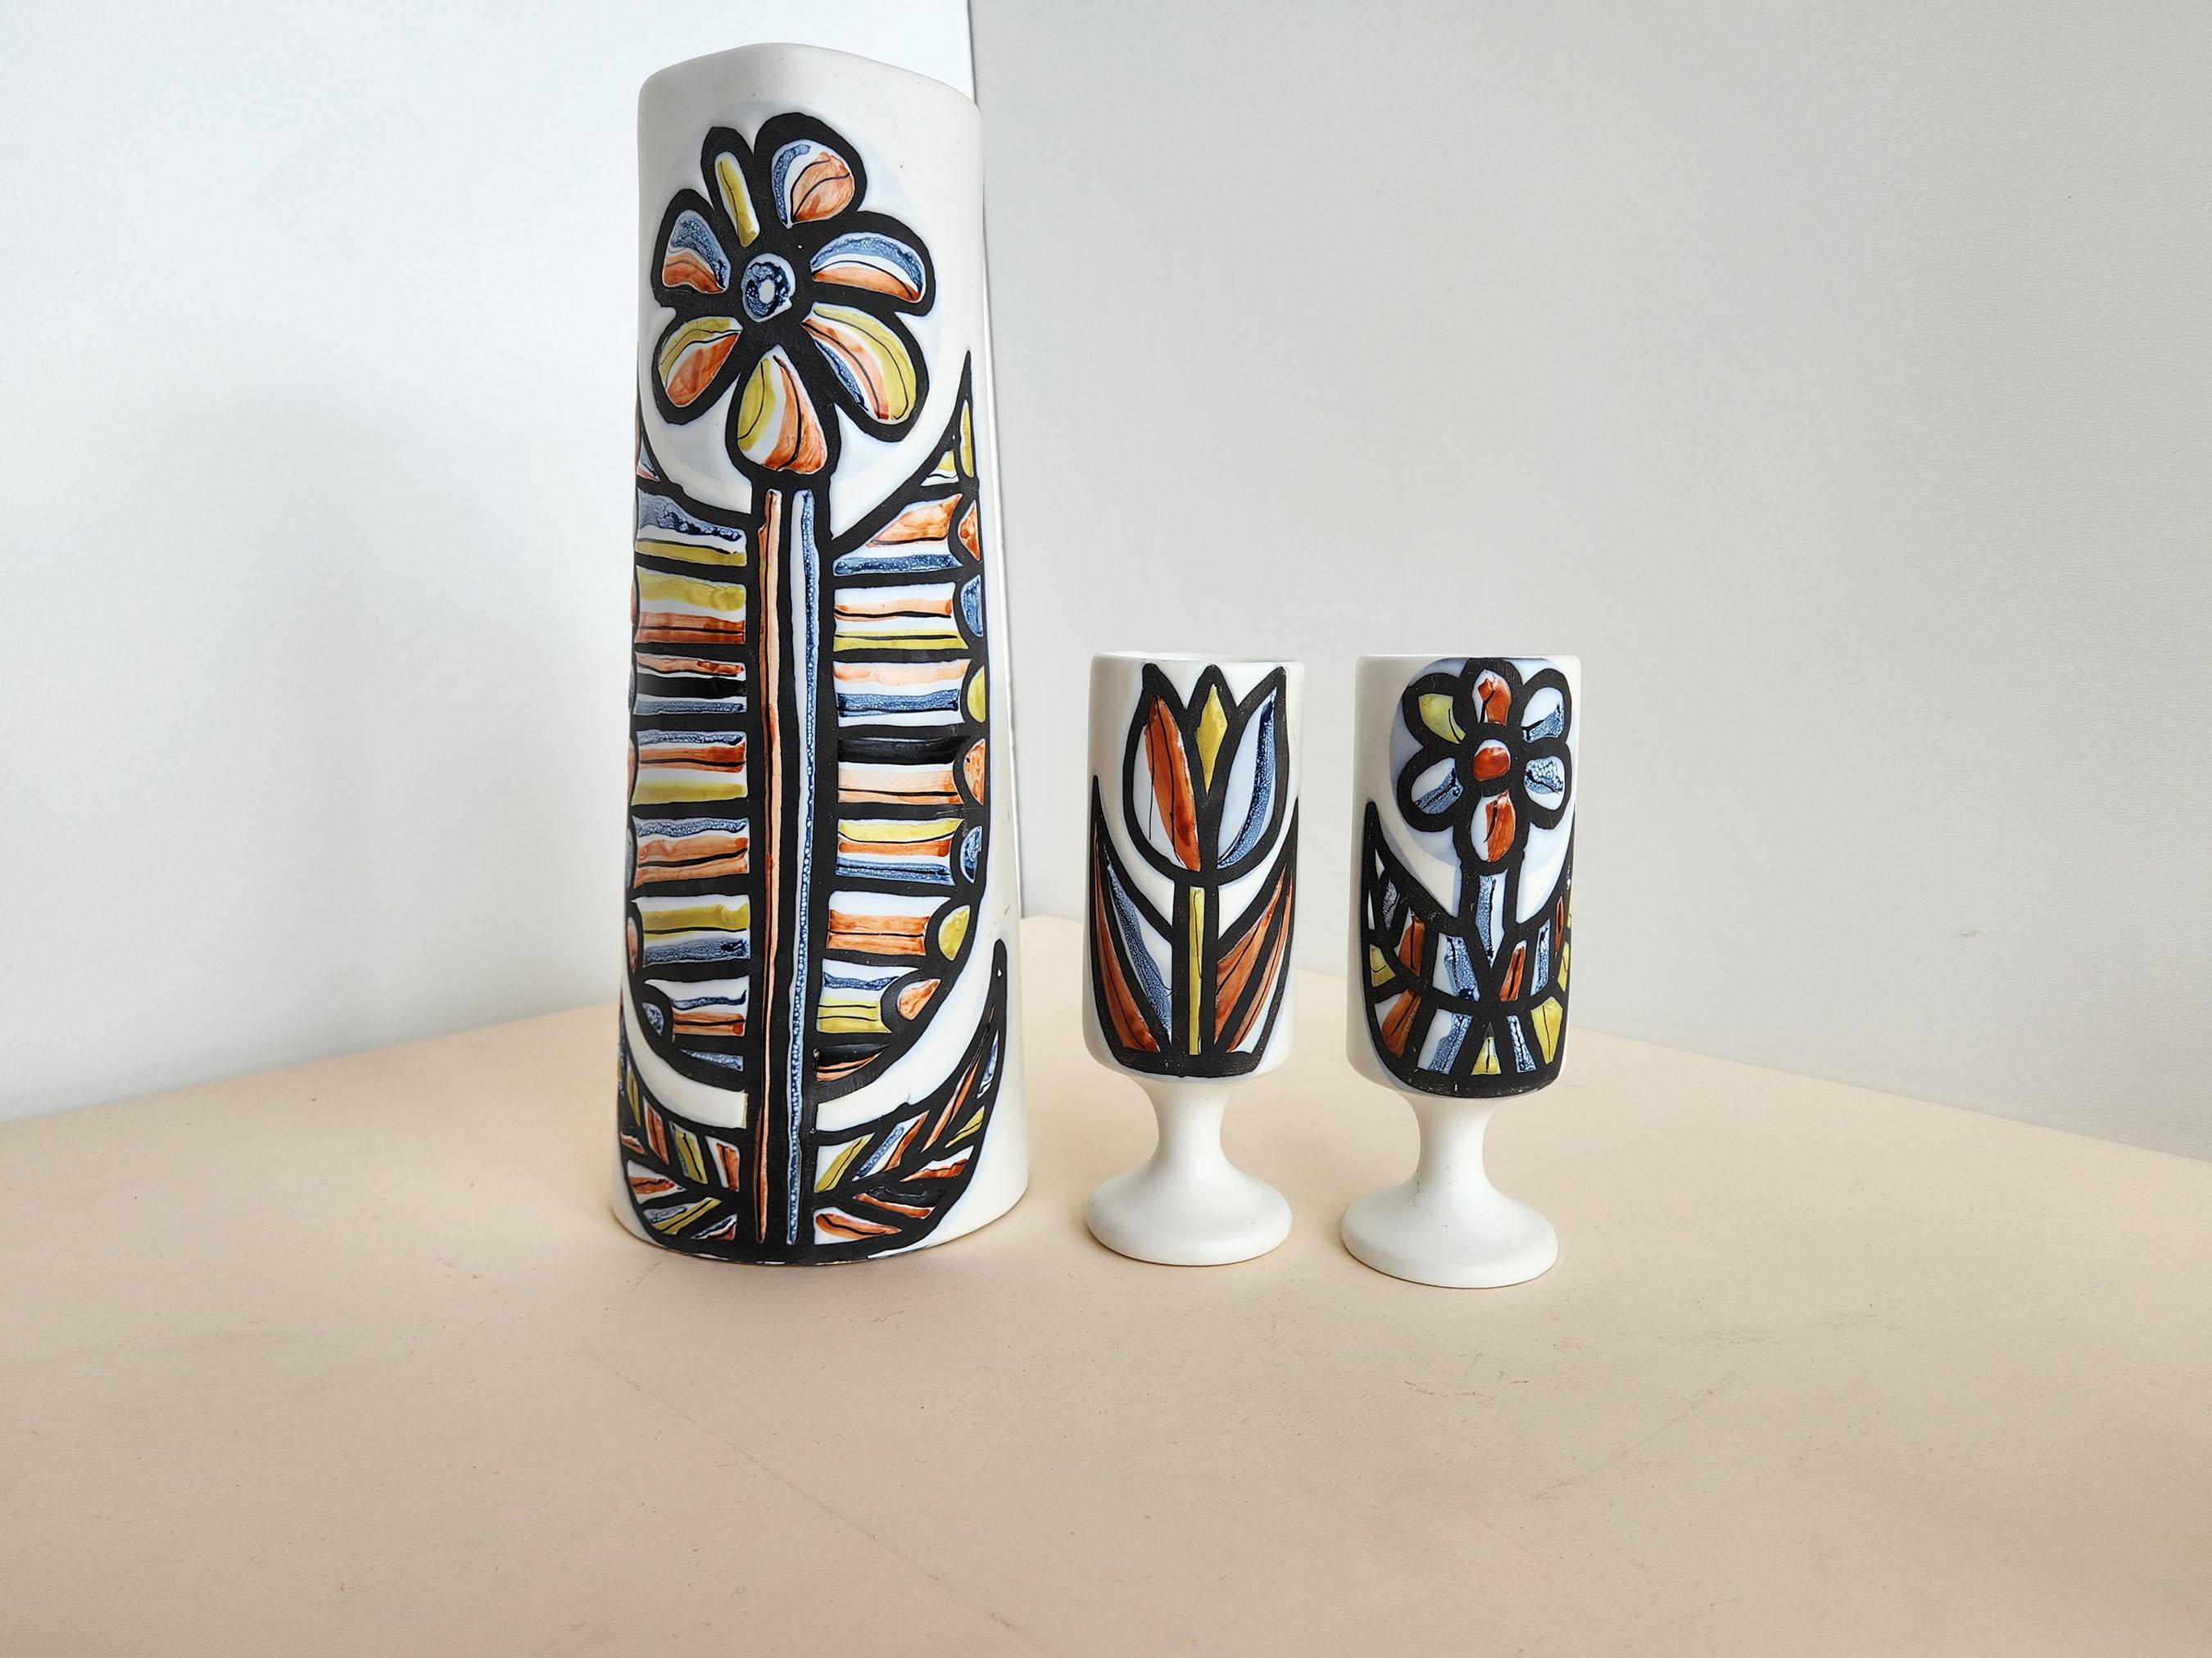 Vintage Keramik Krüge und 2 Becher mit Blumenmotiv von Roger Capron.  Vallauris, Frankreich.

Die Abmessungen der Pokale sind:  Höhe: 7